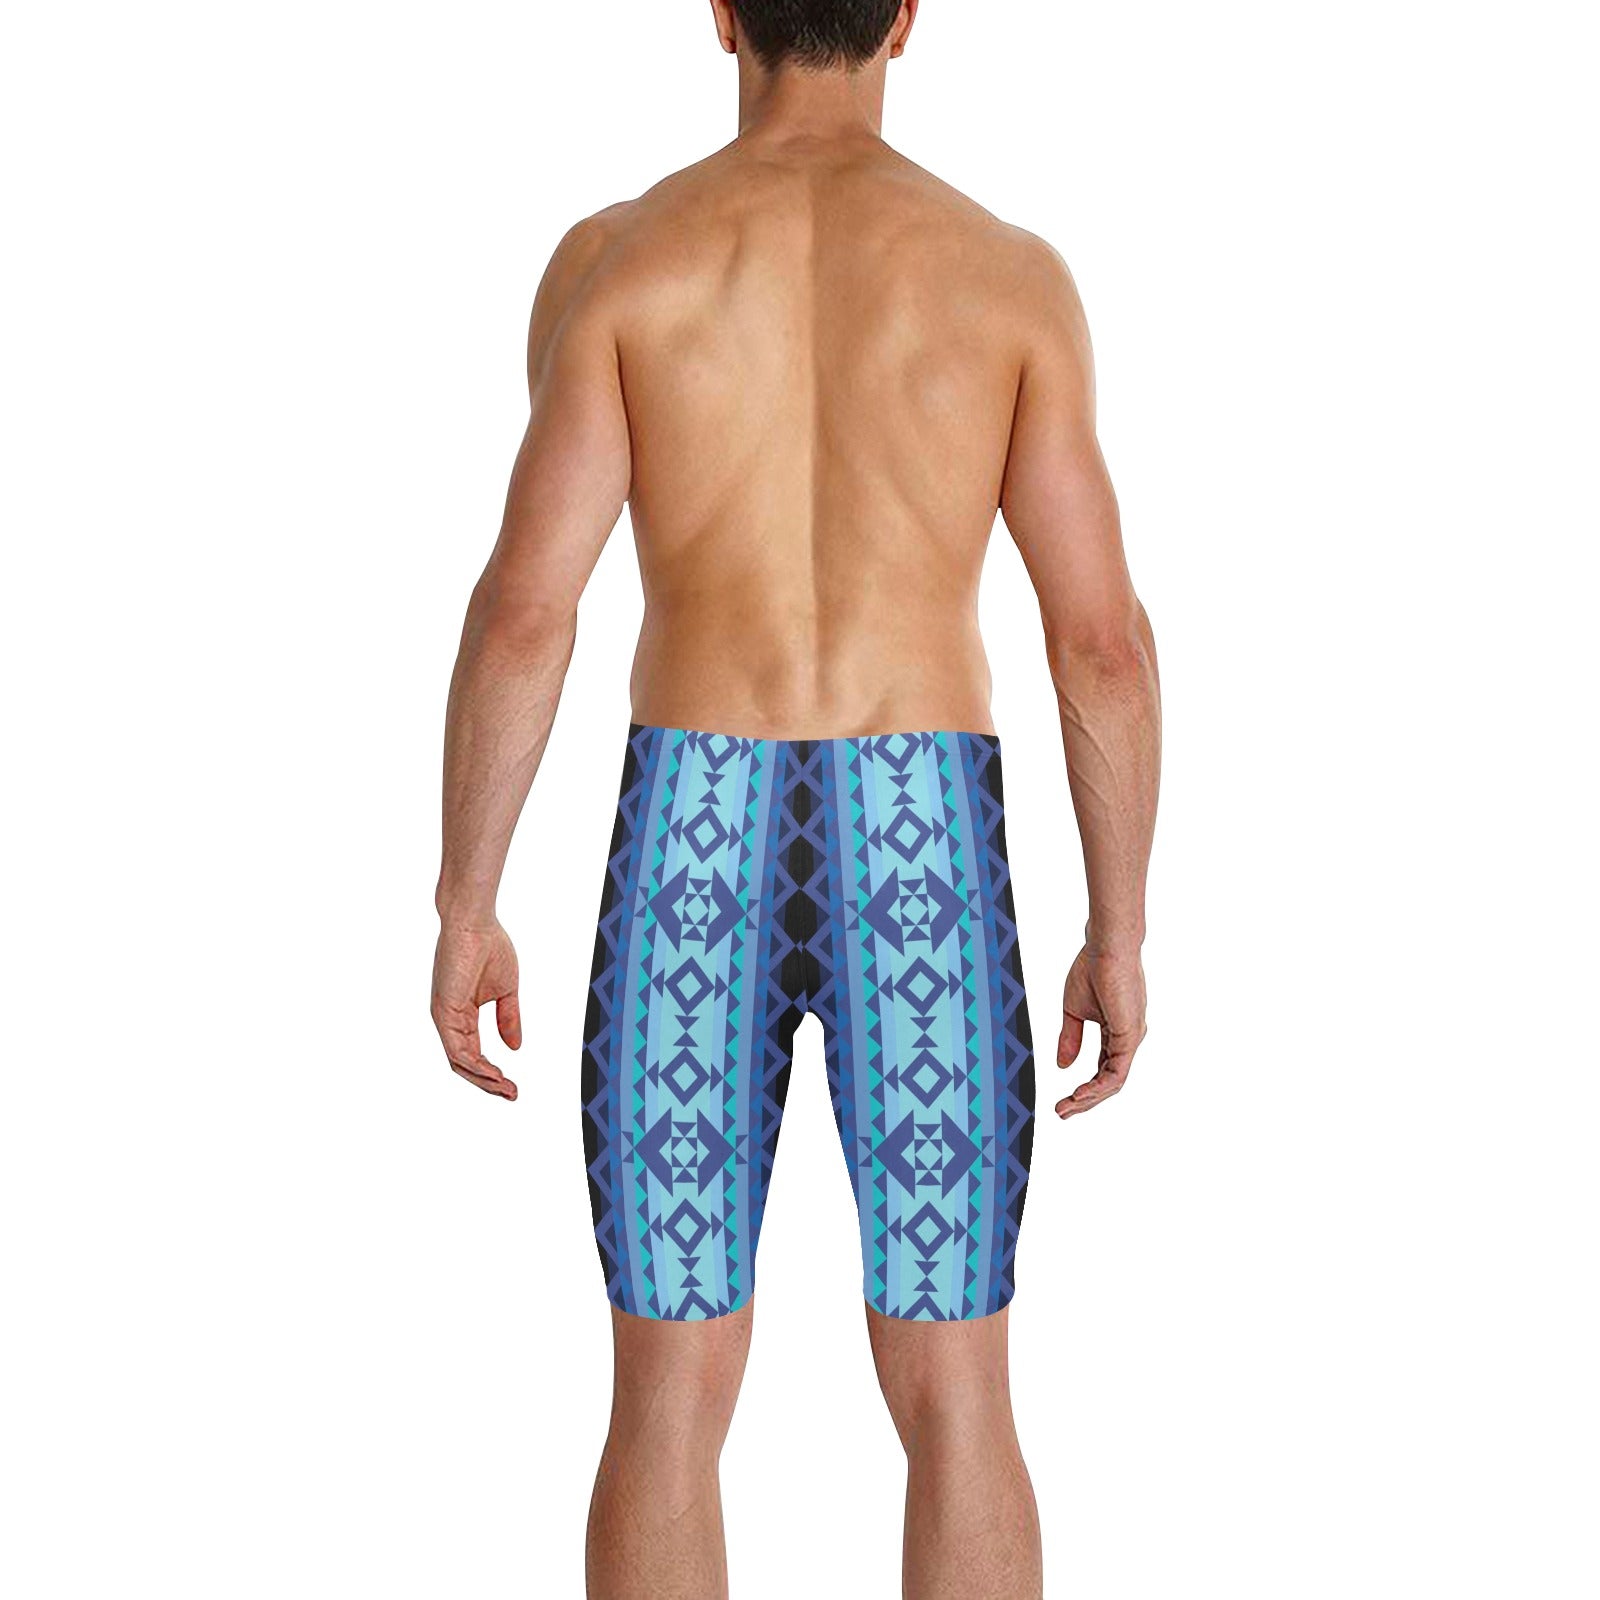 Tipi Men's Knee Length Swimming Trunks